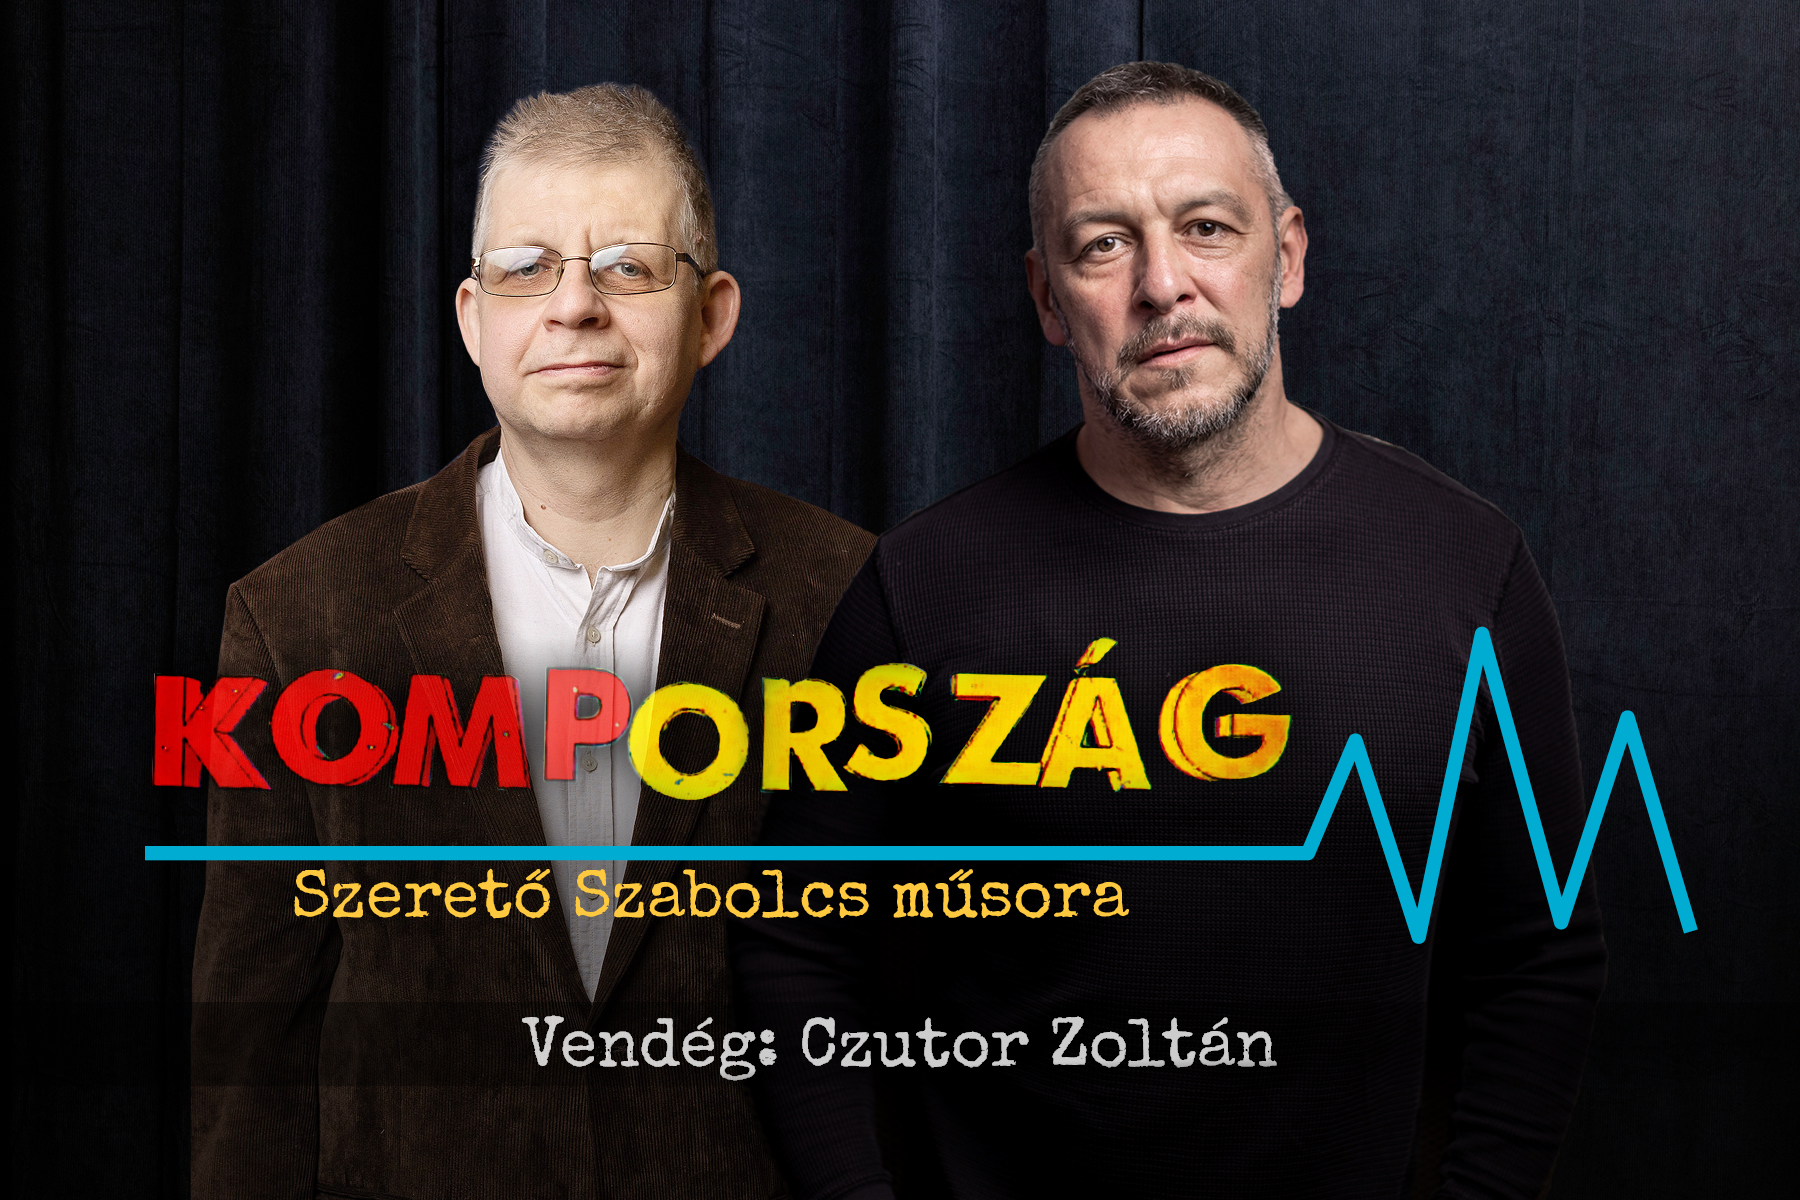 Czutor Zoltán a Kompországban: Ha szándékosan gáncsolnak, akkor talán nem is kell adót fizetni